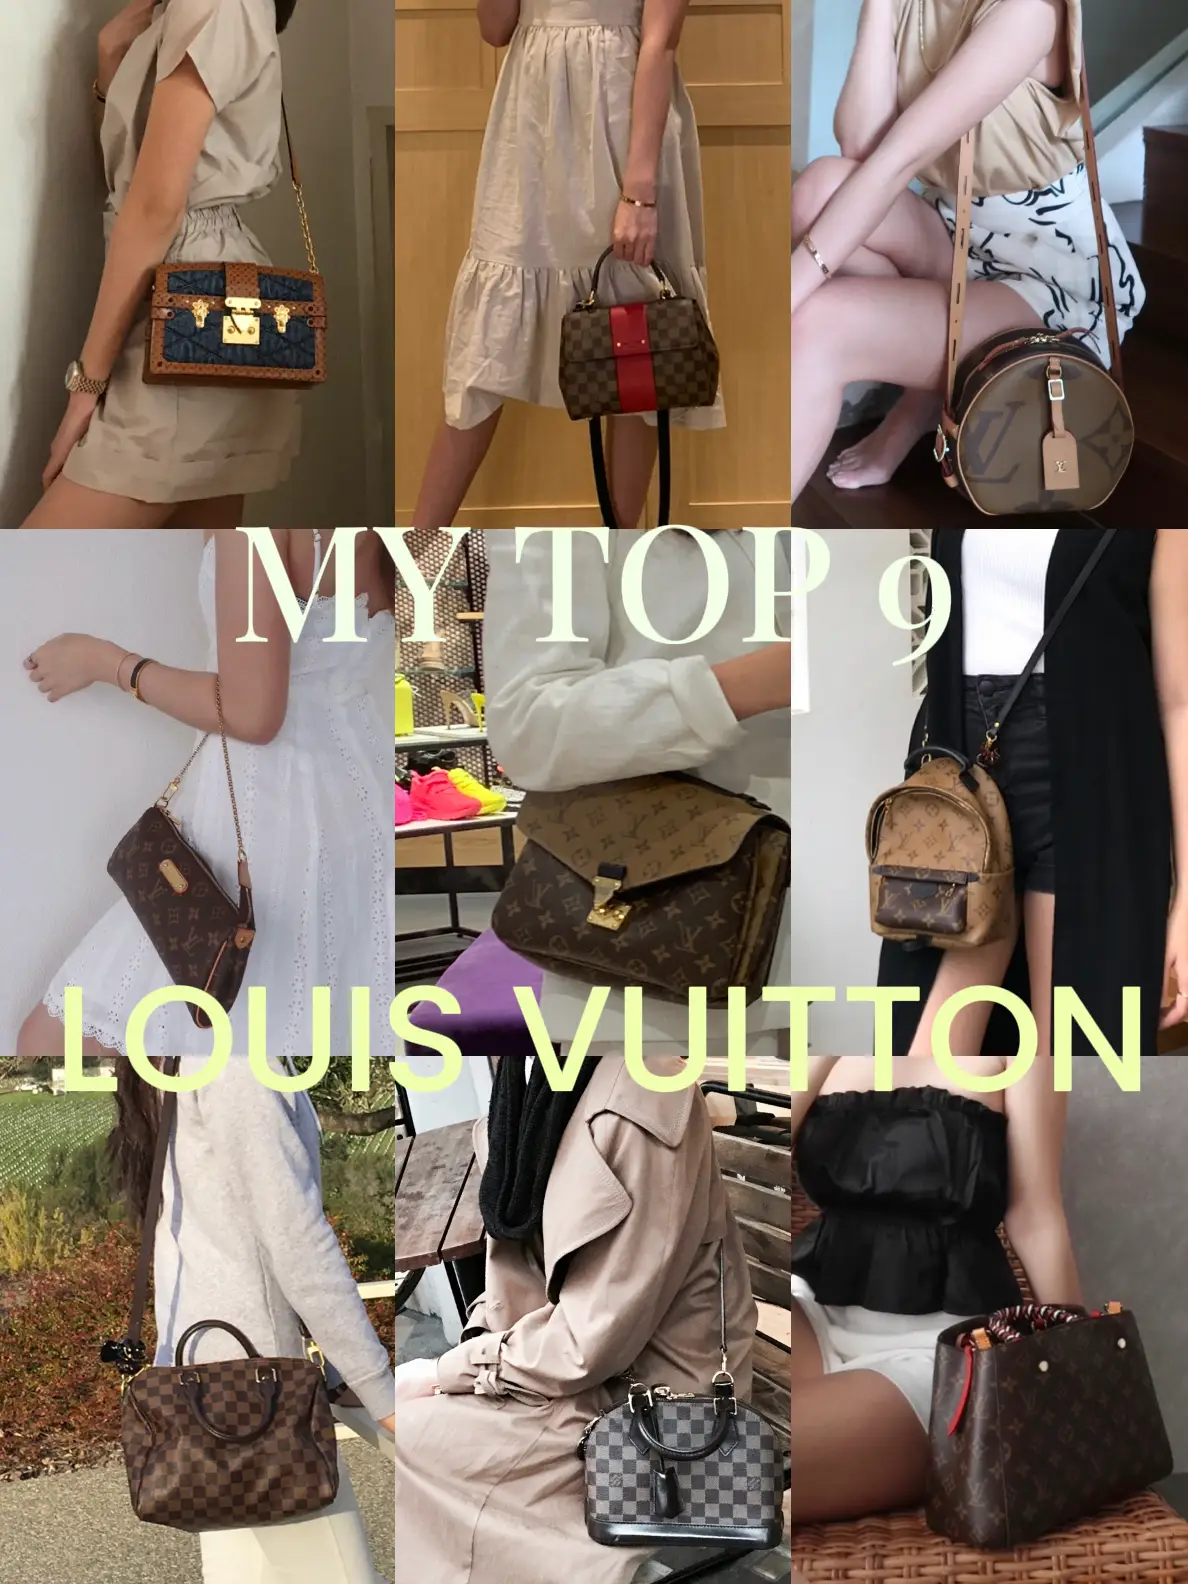 Best Louis Vuitton Multi Pochette Accessoires DHgate Replica